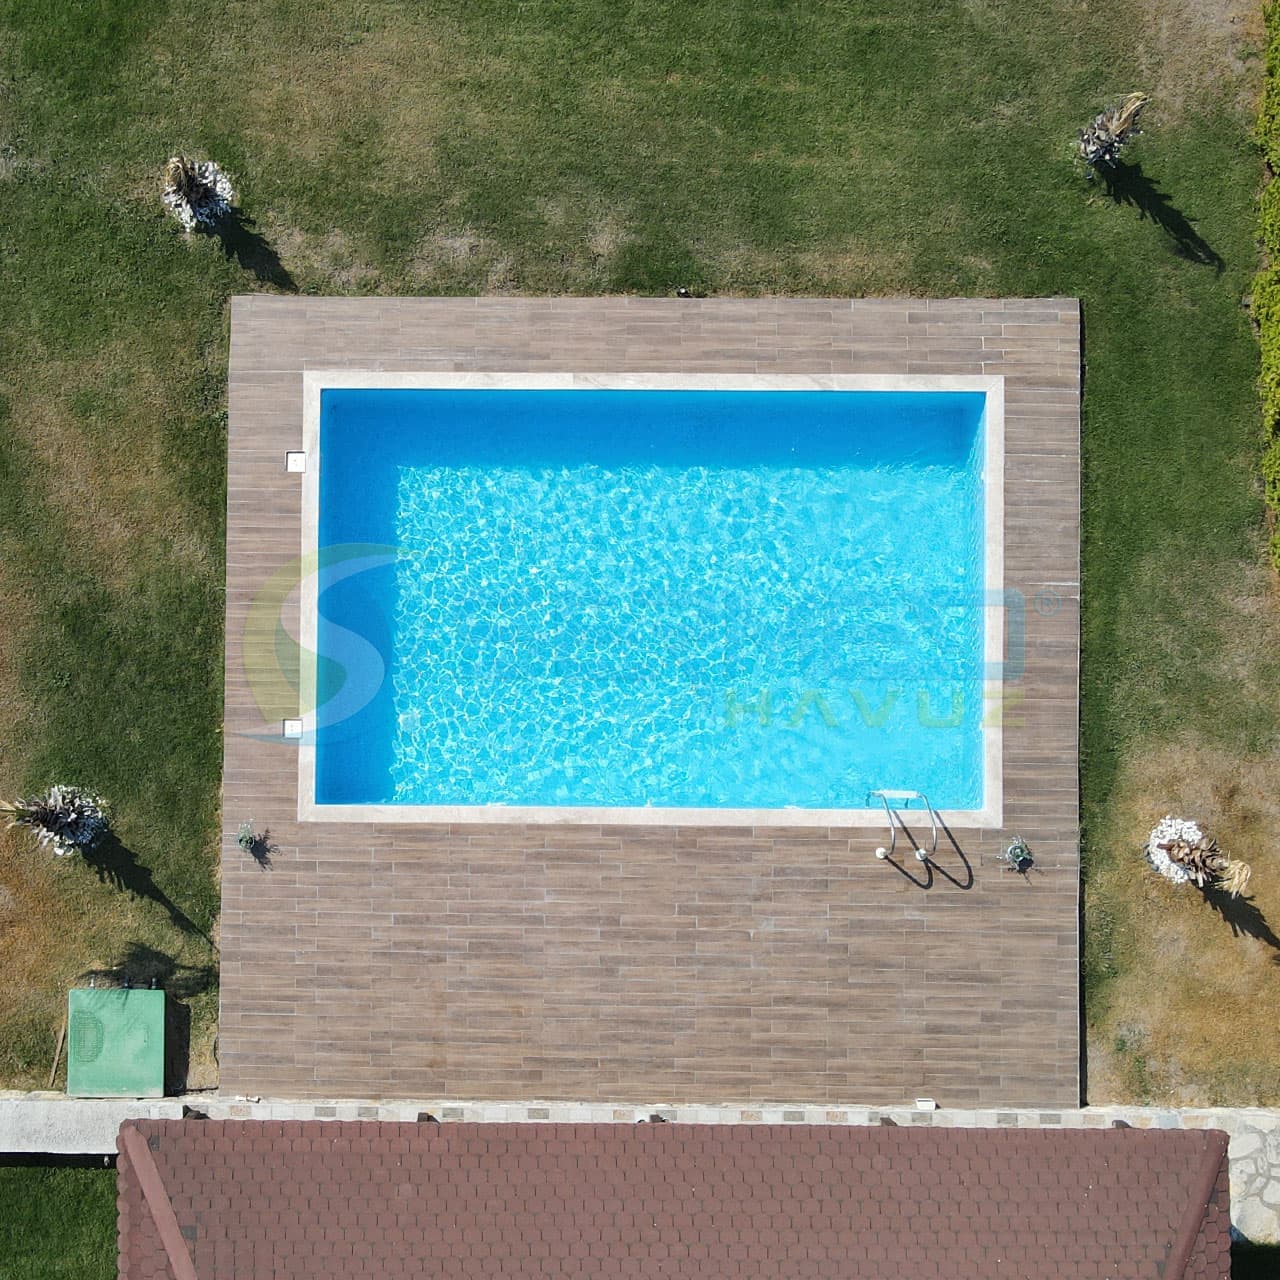 İzmir'den Mahir Bey'e Fipool Skimmerli Panel havuz Sermed Havuz Firması Tarafından Yapıldı.